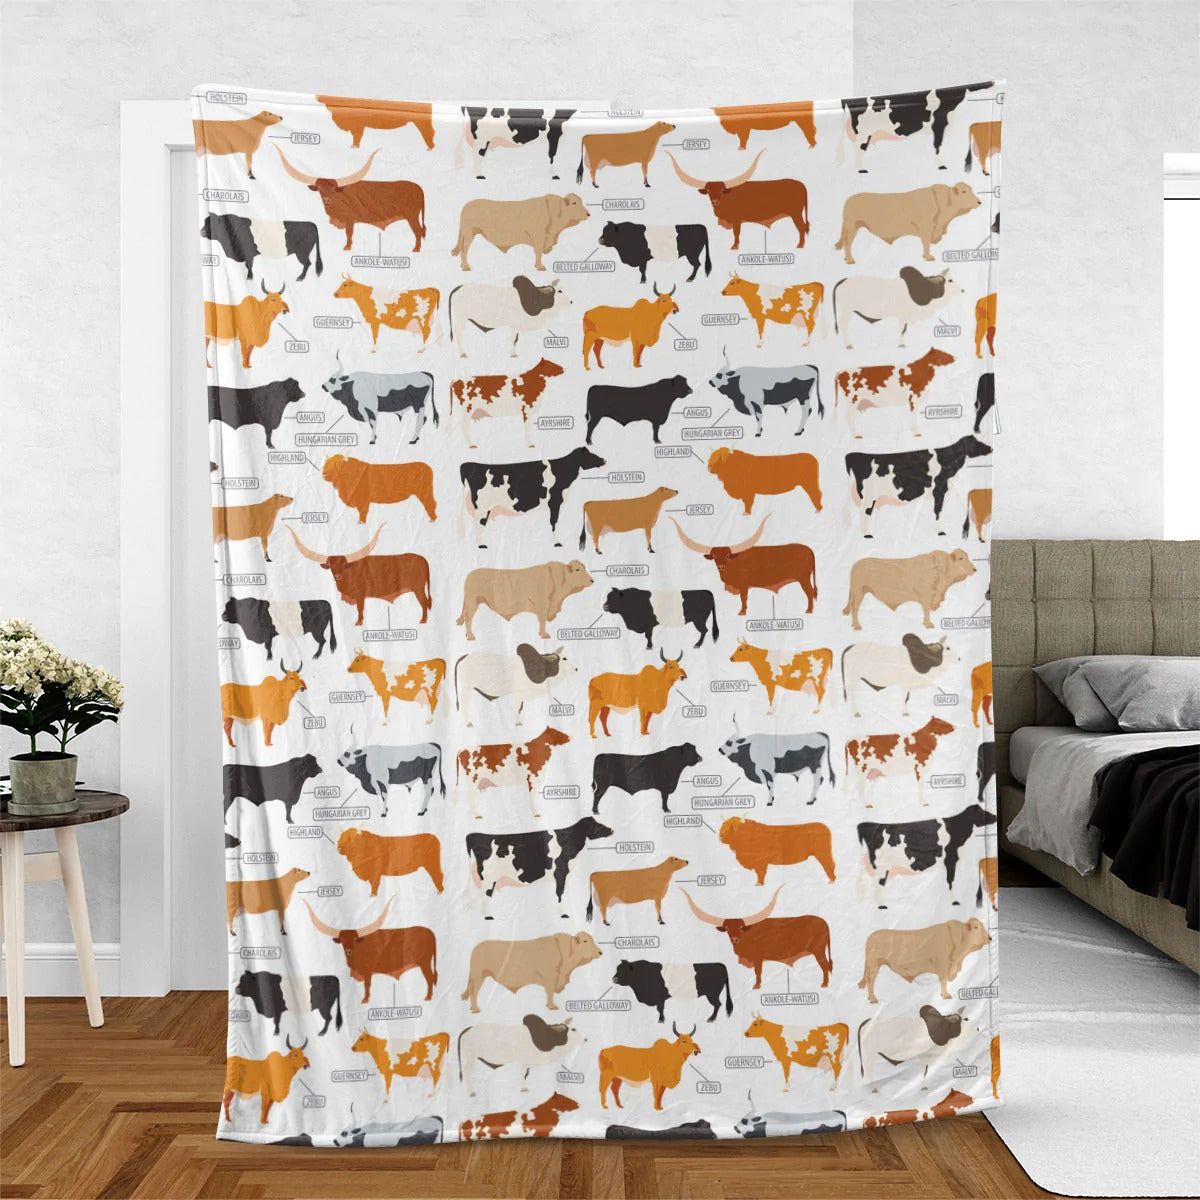 Cattle Breed Pattern Blanket/ Farm Fleece Sherpa 60x80 Blanket/ Farm Blanket/ Cute Animal Warm Soft Cozy Blanket